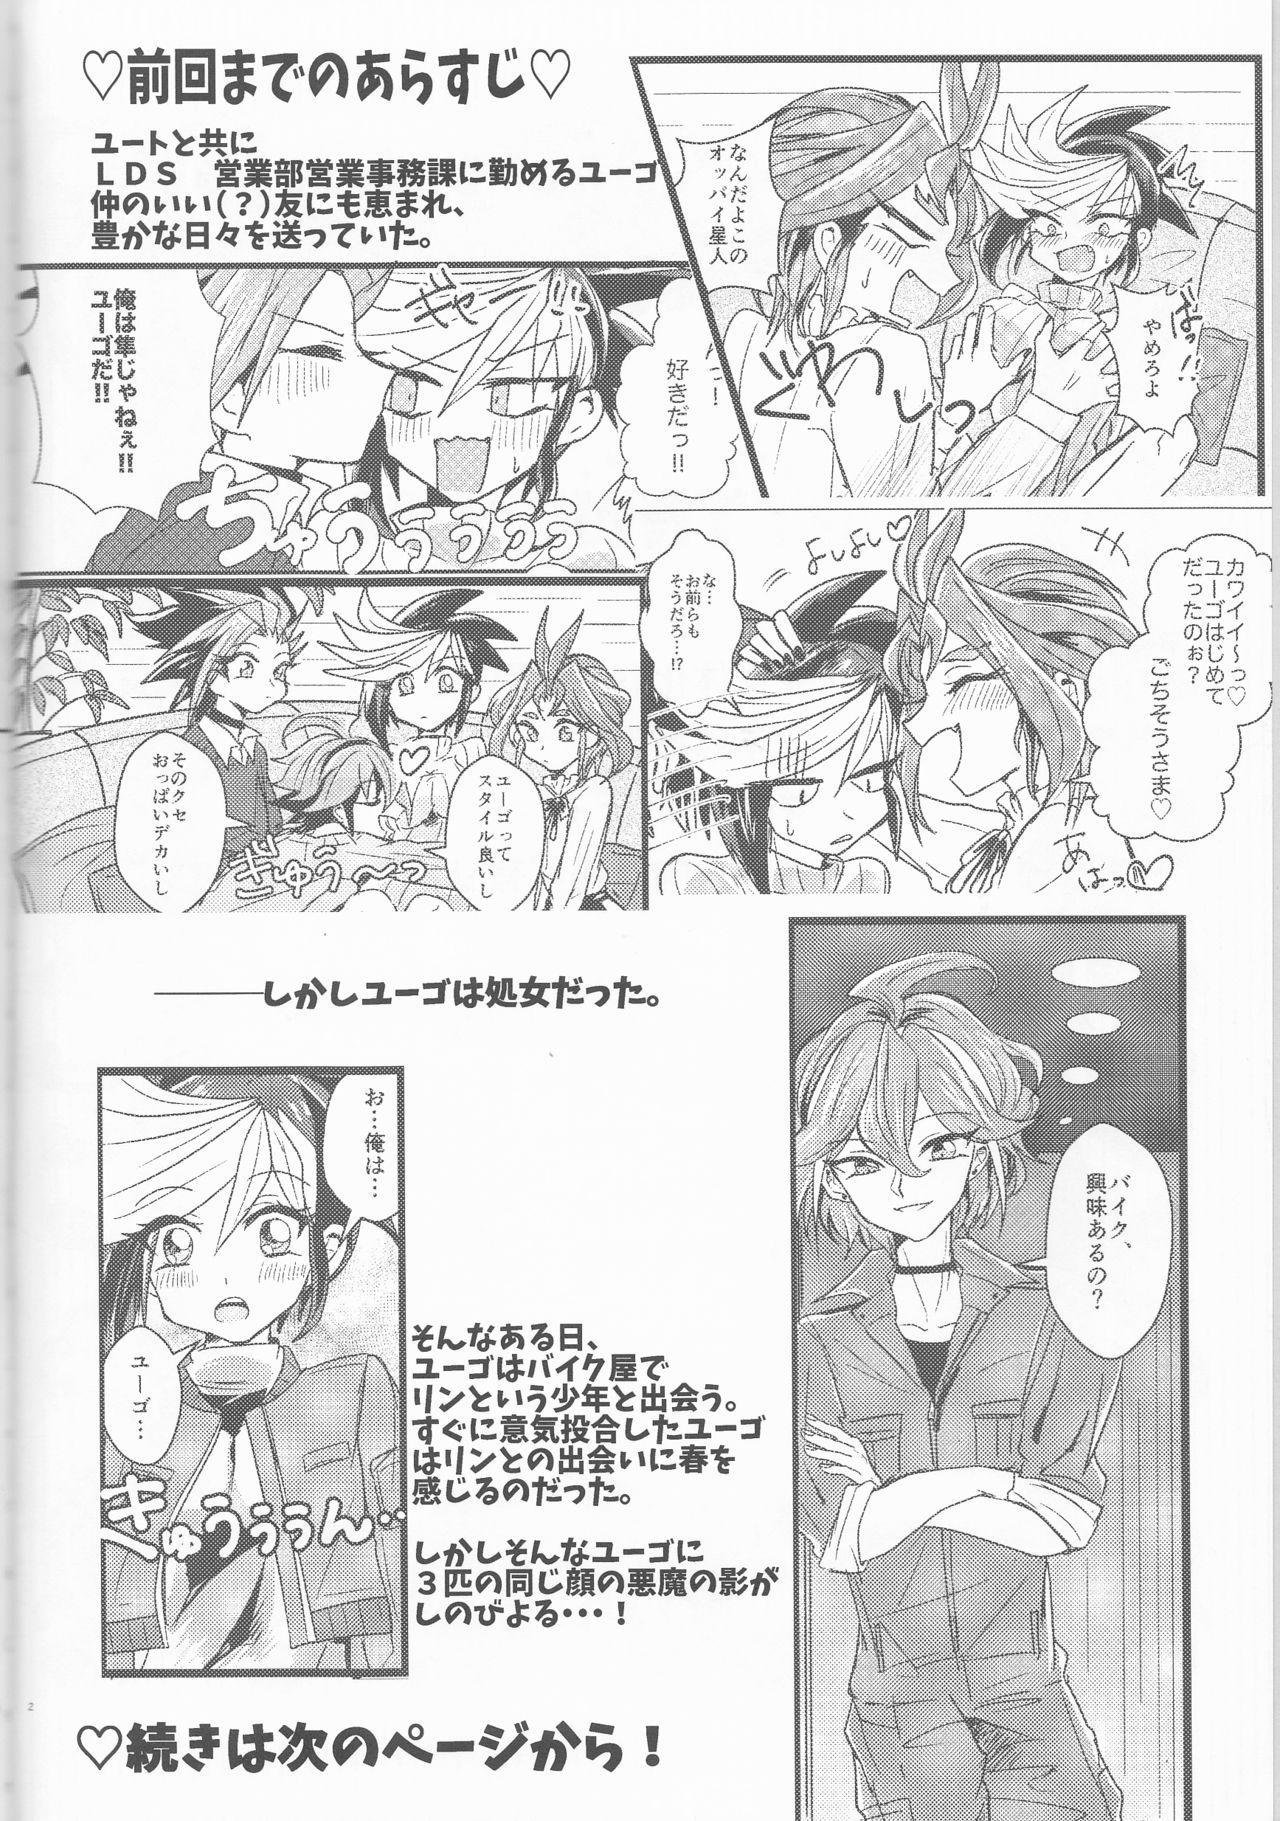 Sextoy LDS Hishoka no Himitsu II - Yu-gi-oh arc-v Polish - Page 3